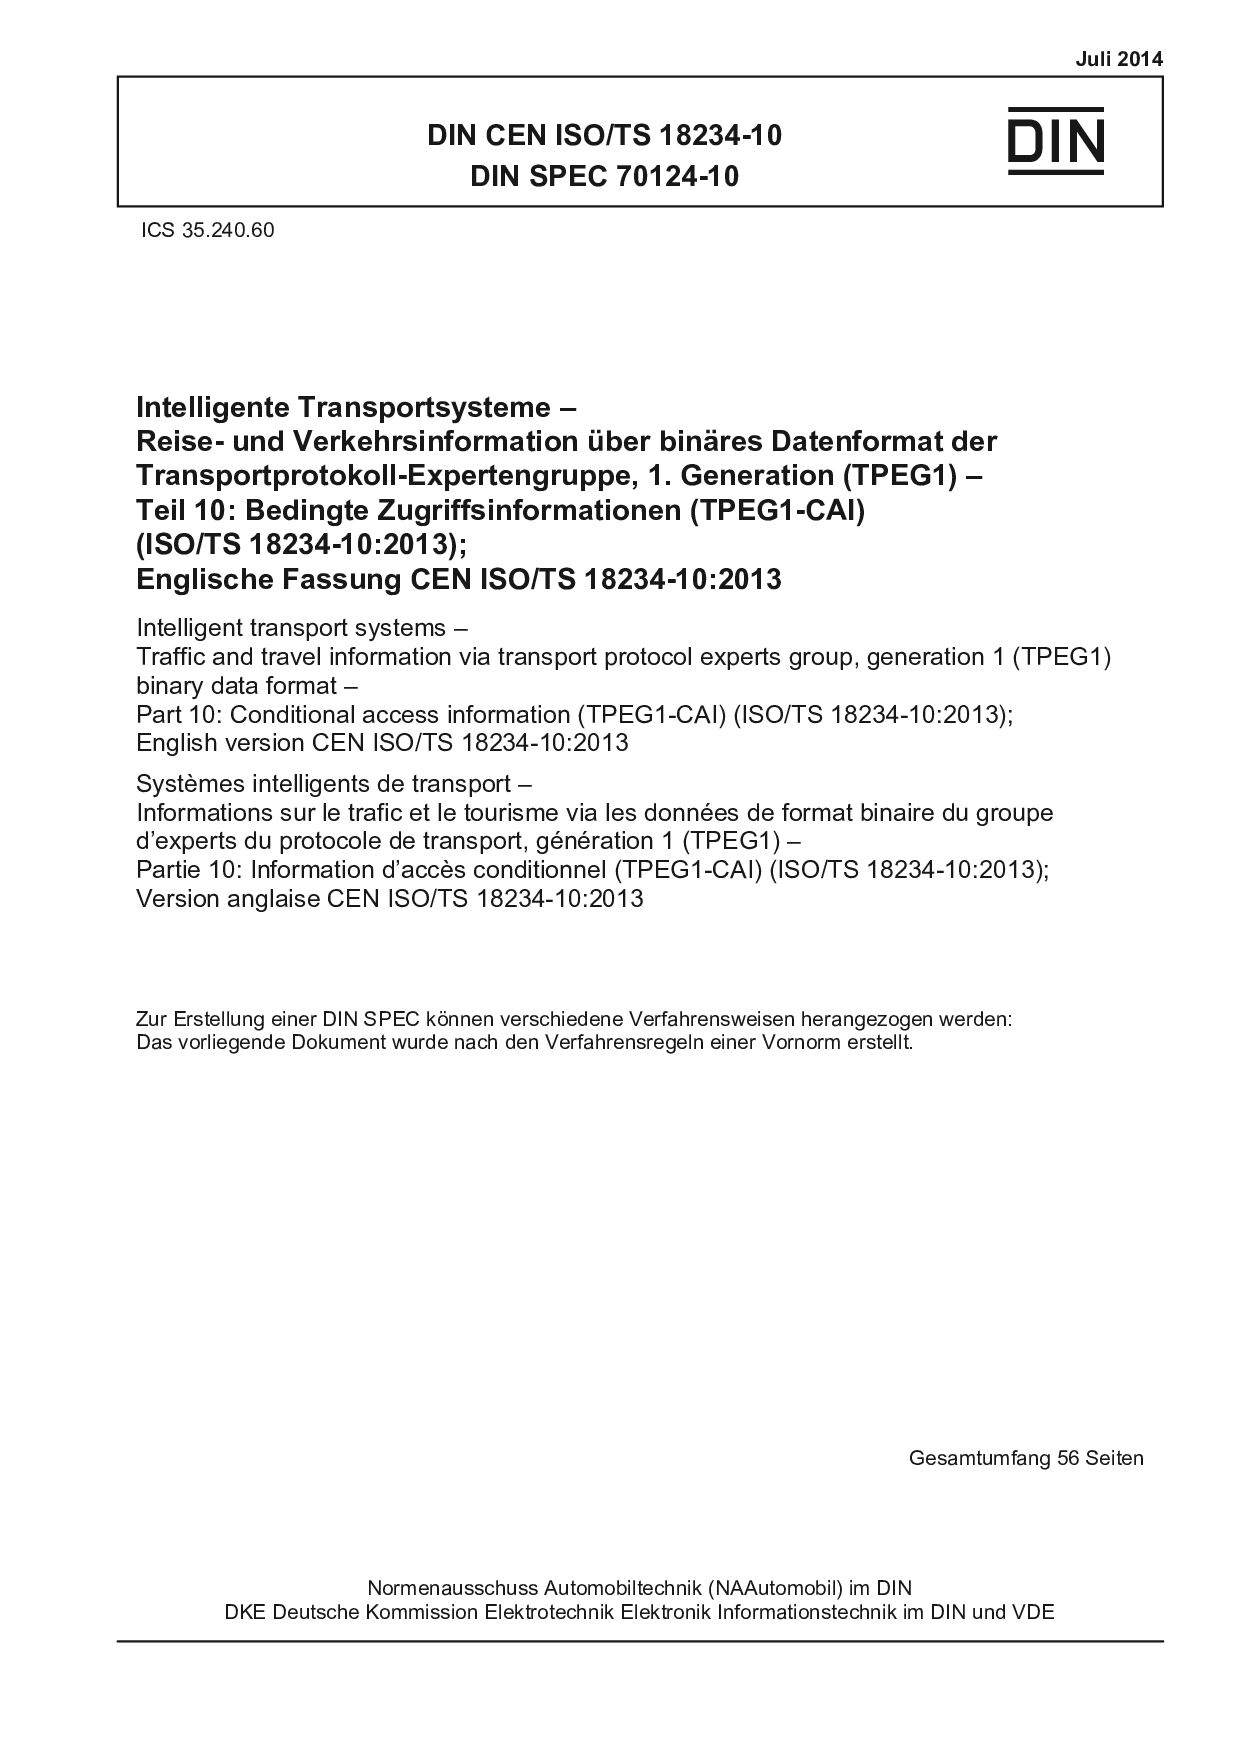 DIN CEN ISO/TS 18234-10:2014*DIN SPEC 70124-10:2014封面图